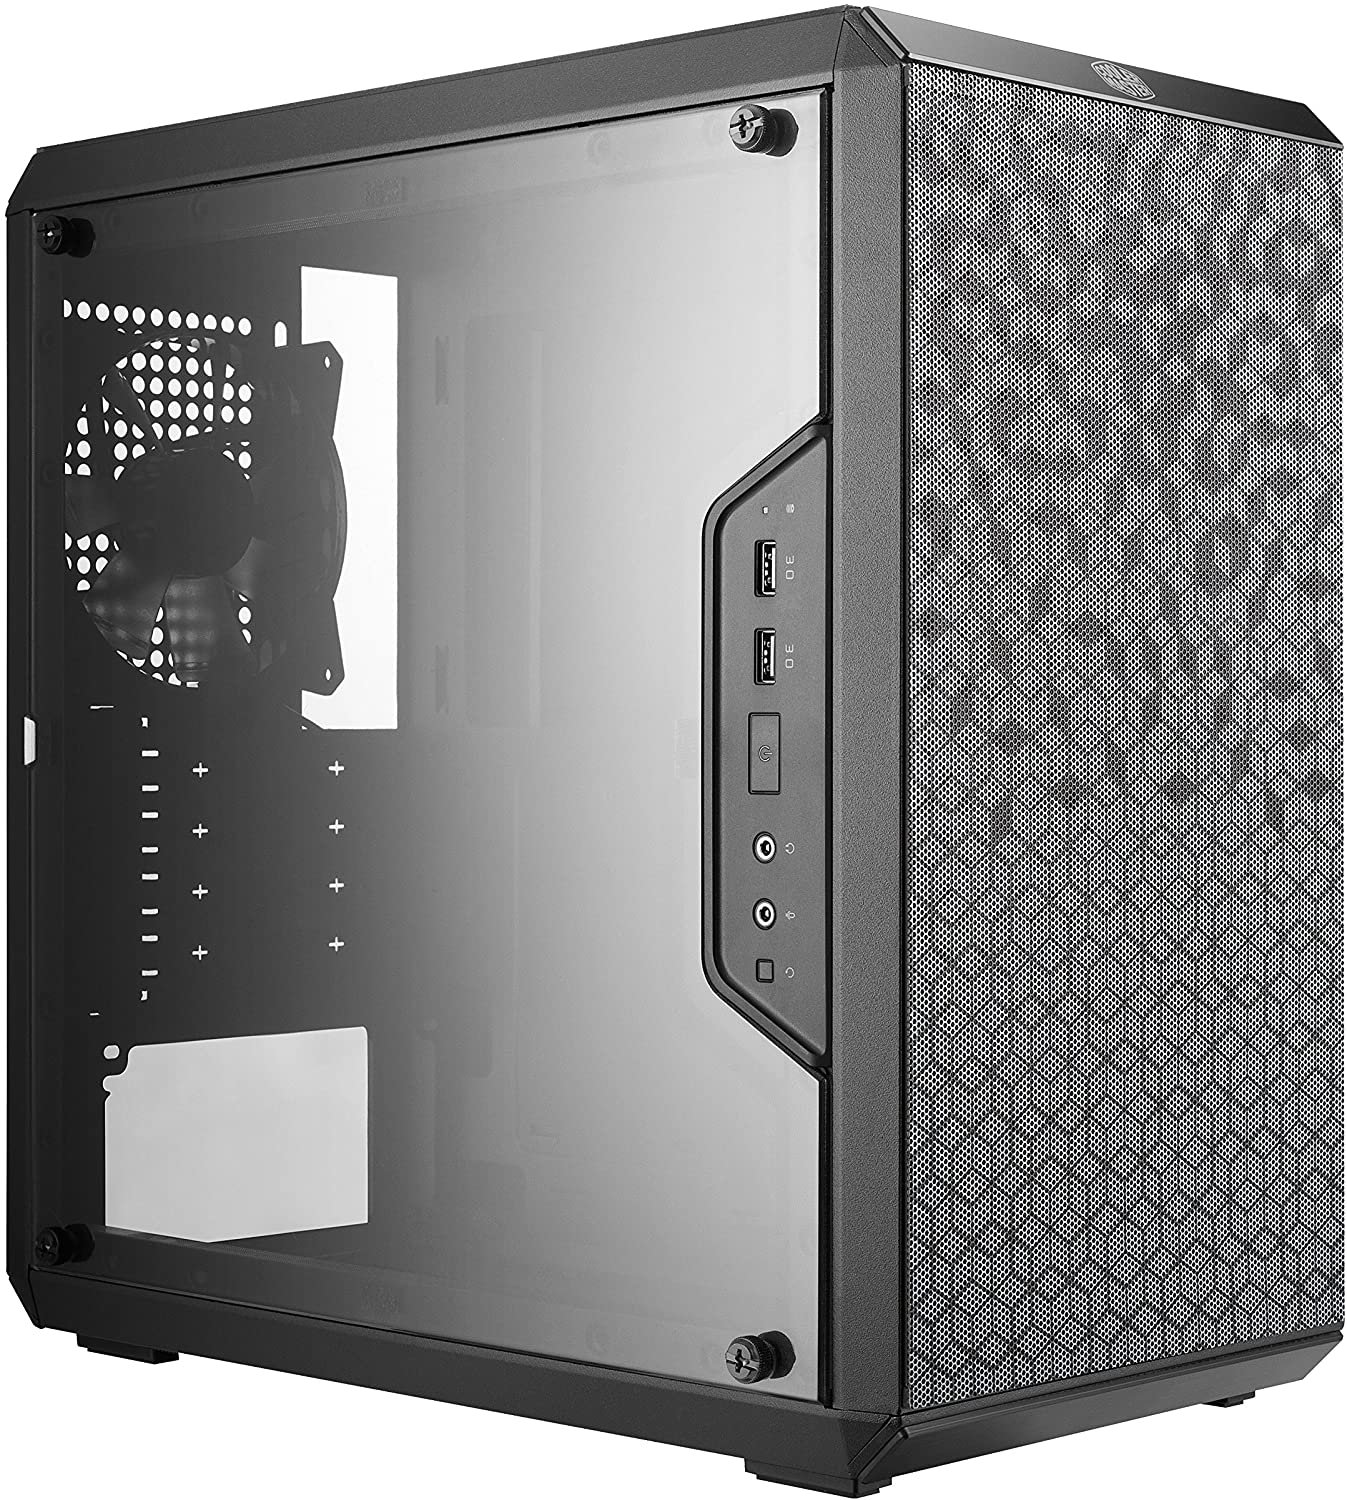 8 Case - Best $700 PC Build 2020